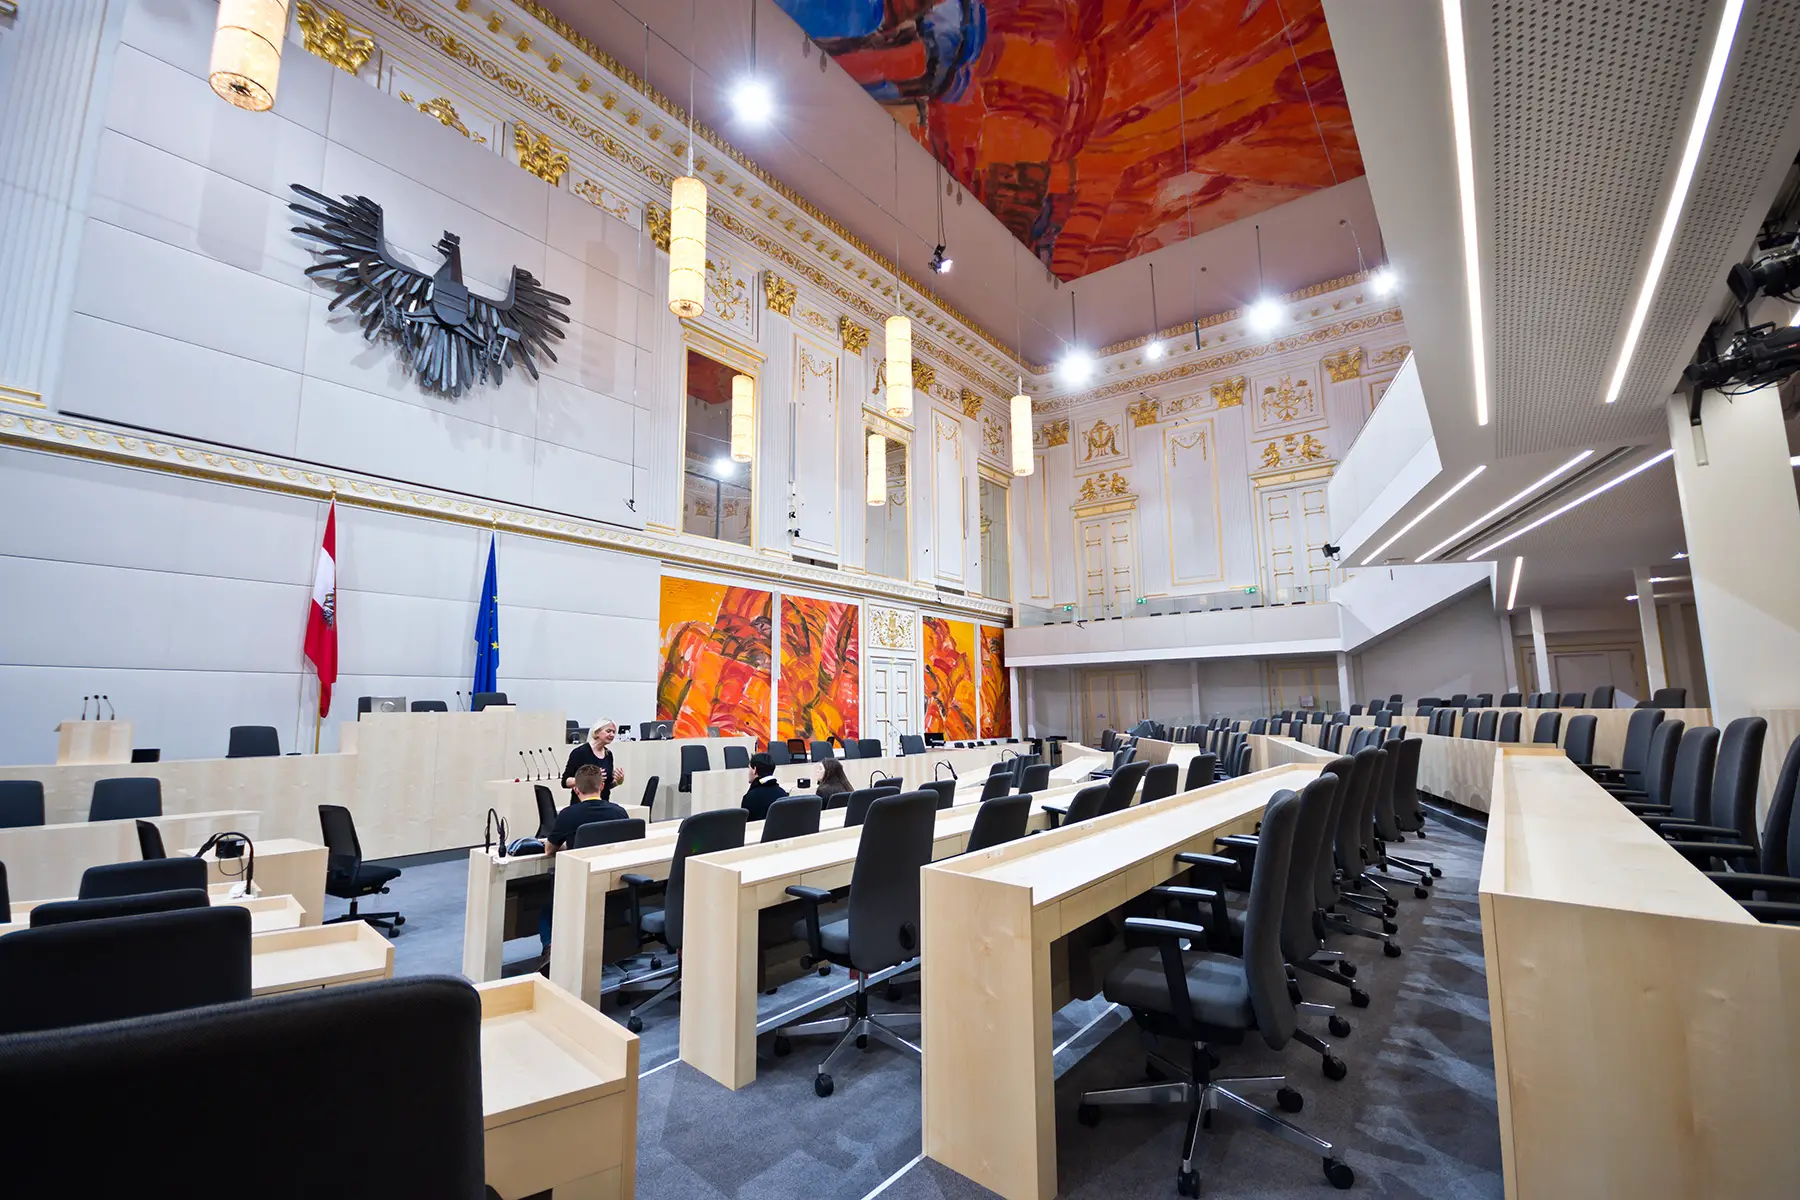 The interior of Austria's Parliament